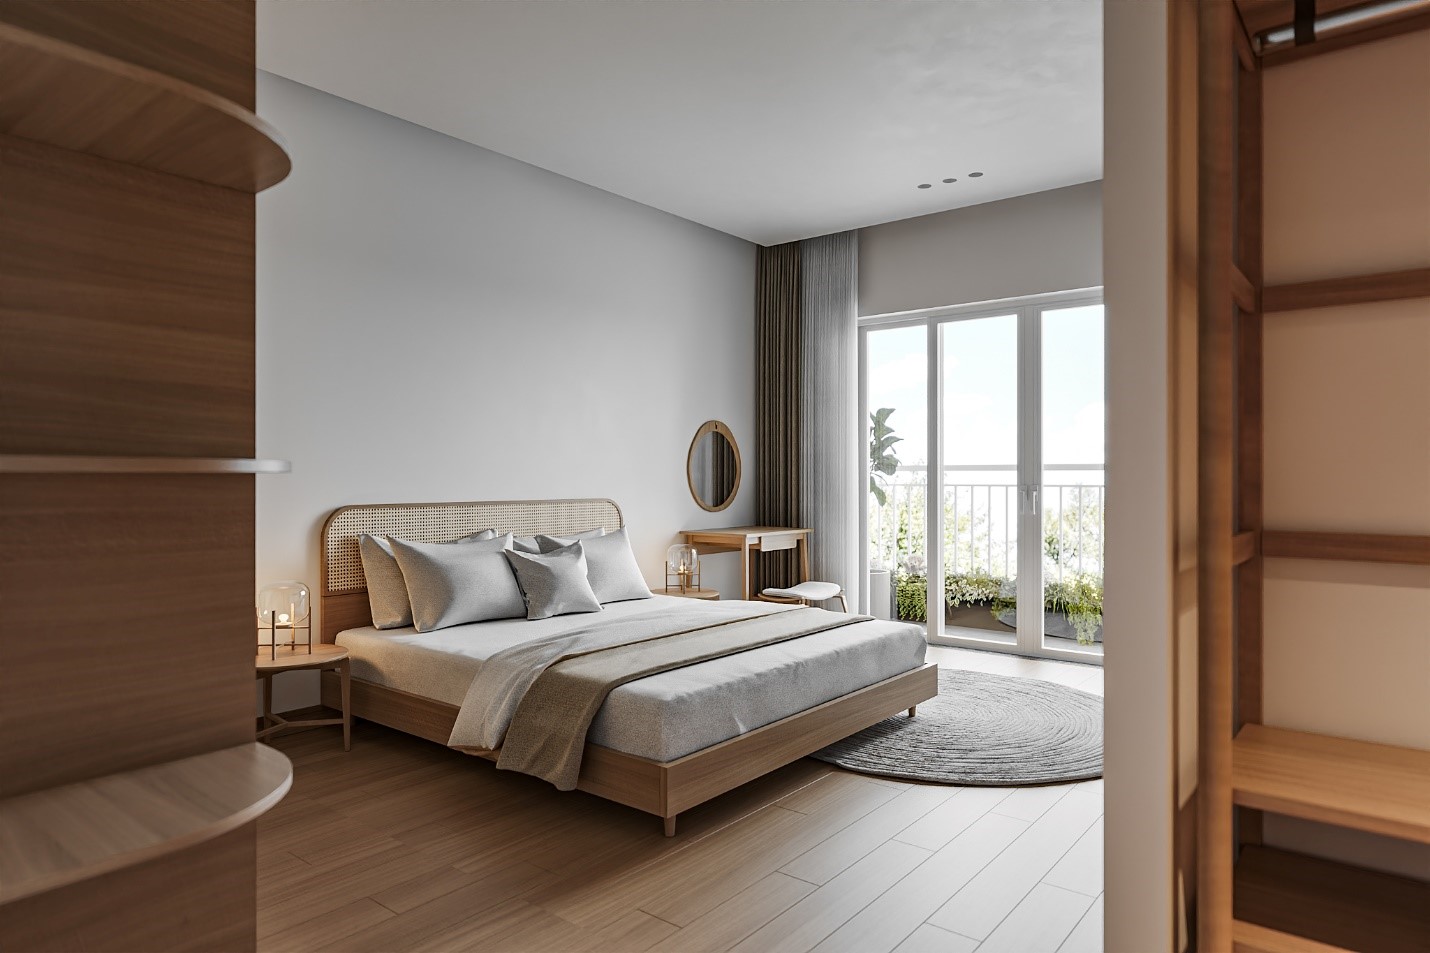 Bàn trang điểm gỗ thường được thiết kế với các tông màu trầm, ưa nhìn và tạo cảm giác ấm áp cho không gian phòng ngủ